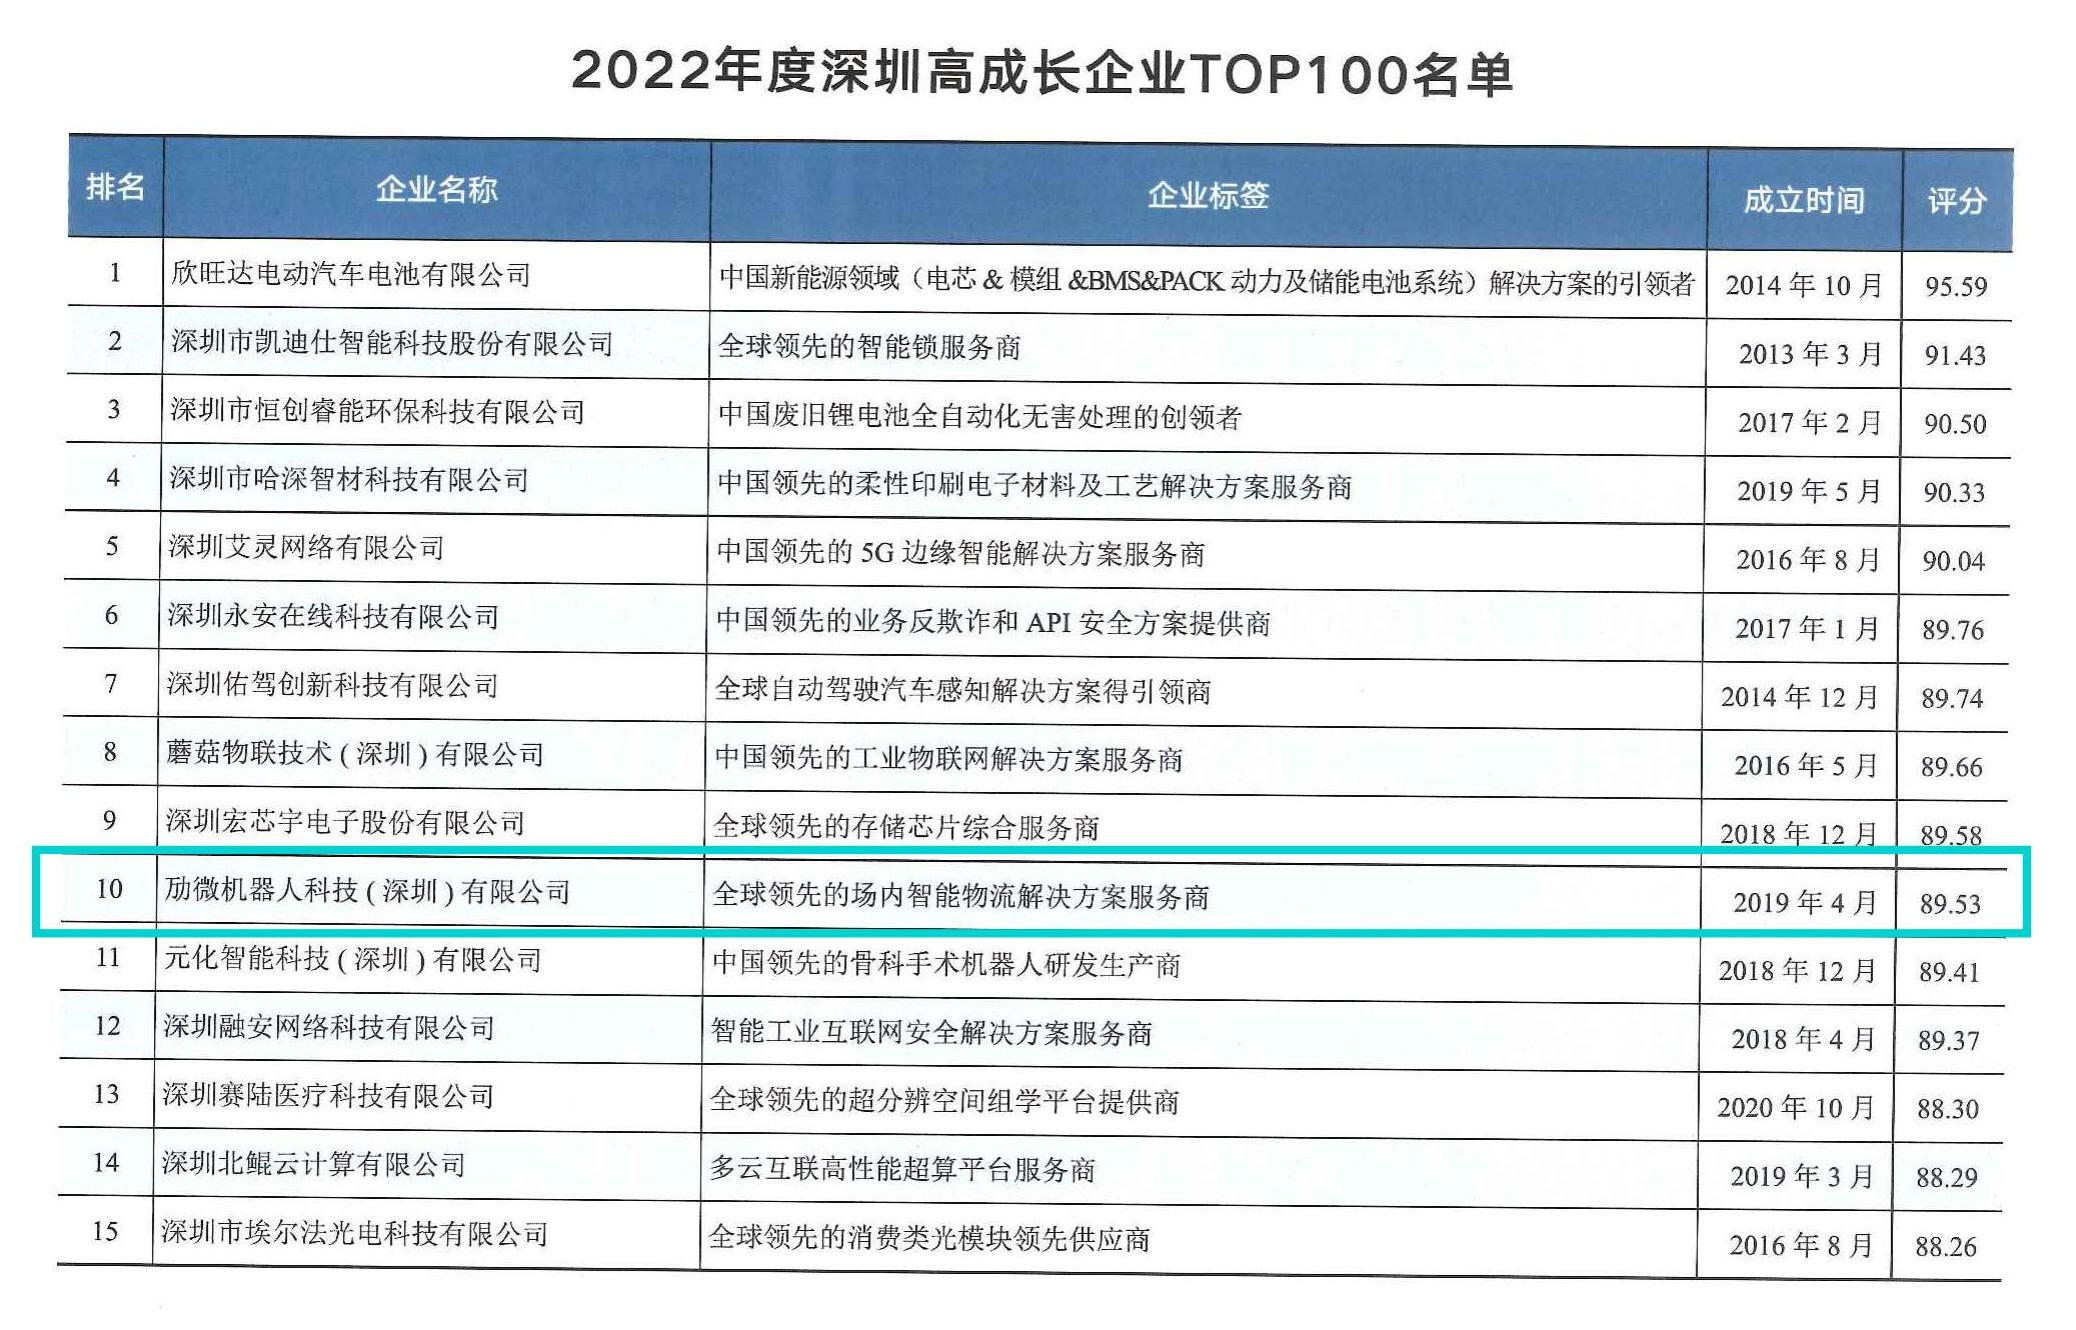 深圳市企业前10名，机器人领域第1位，劢微机器人强势上榜“2022深圳高成长企业TOP100”